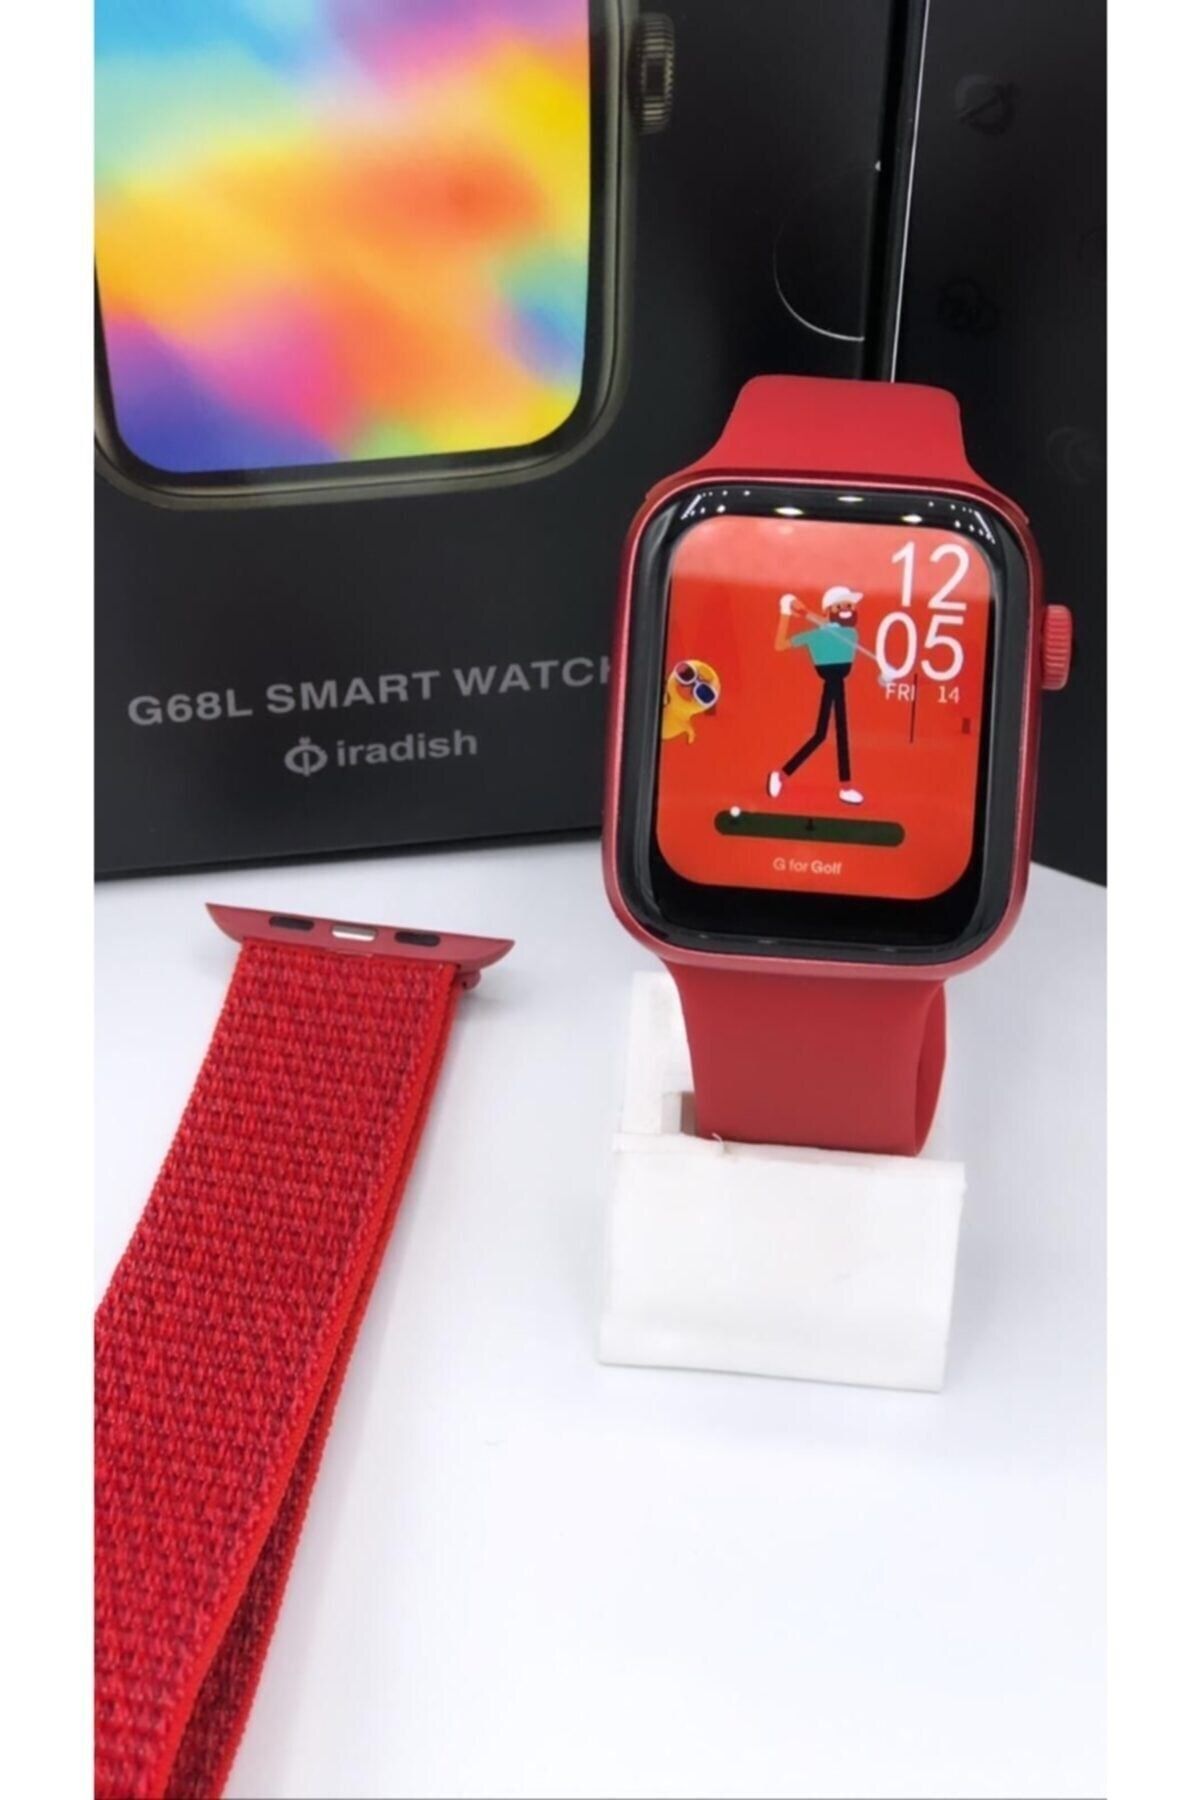 Kingshark G68l Smart Watch 6s Akıllı Saat Konuşma Özellikli Türkçe Menü Yan Tuşlar Aktif Uygulama